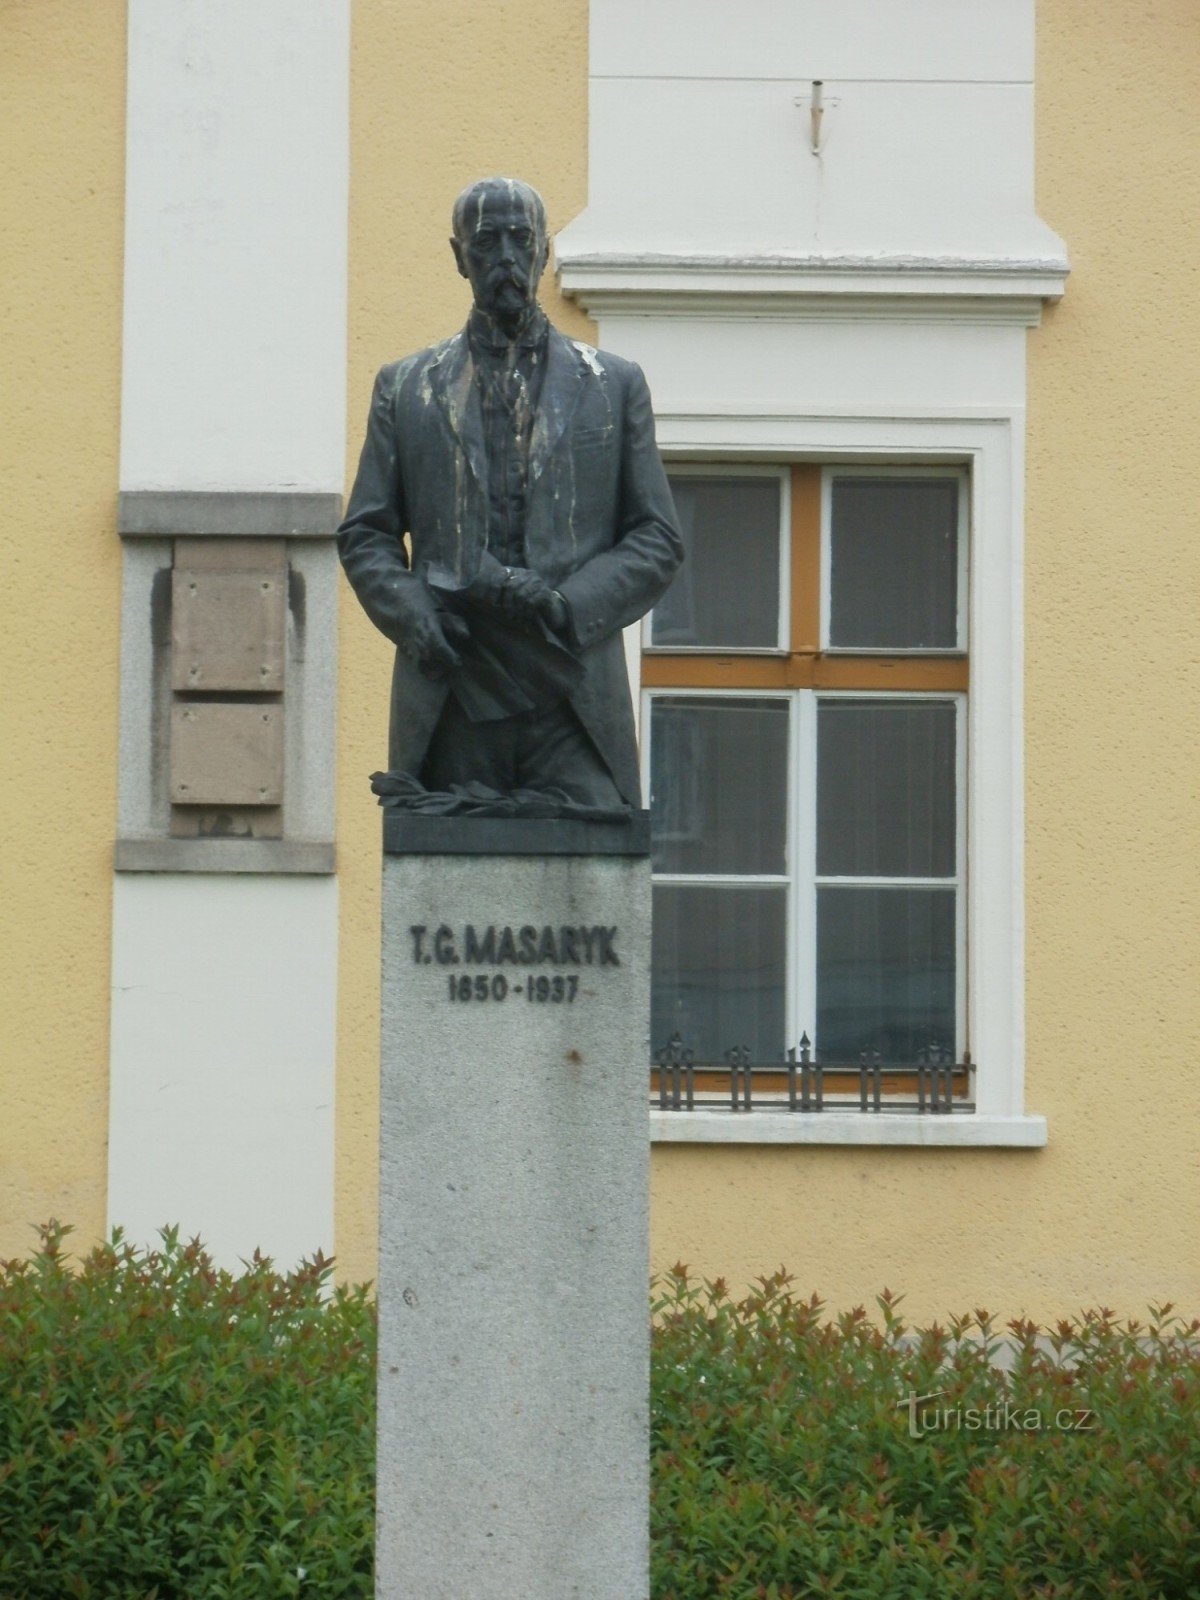 Havlíčkův Brod - TGMasaryk monument